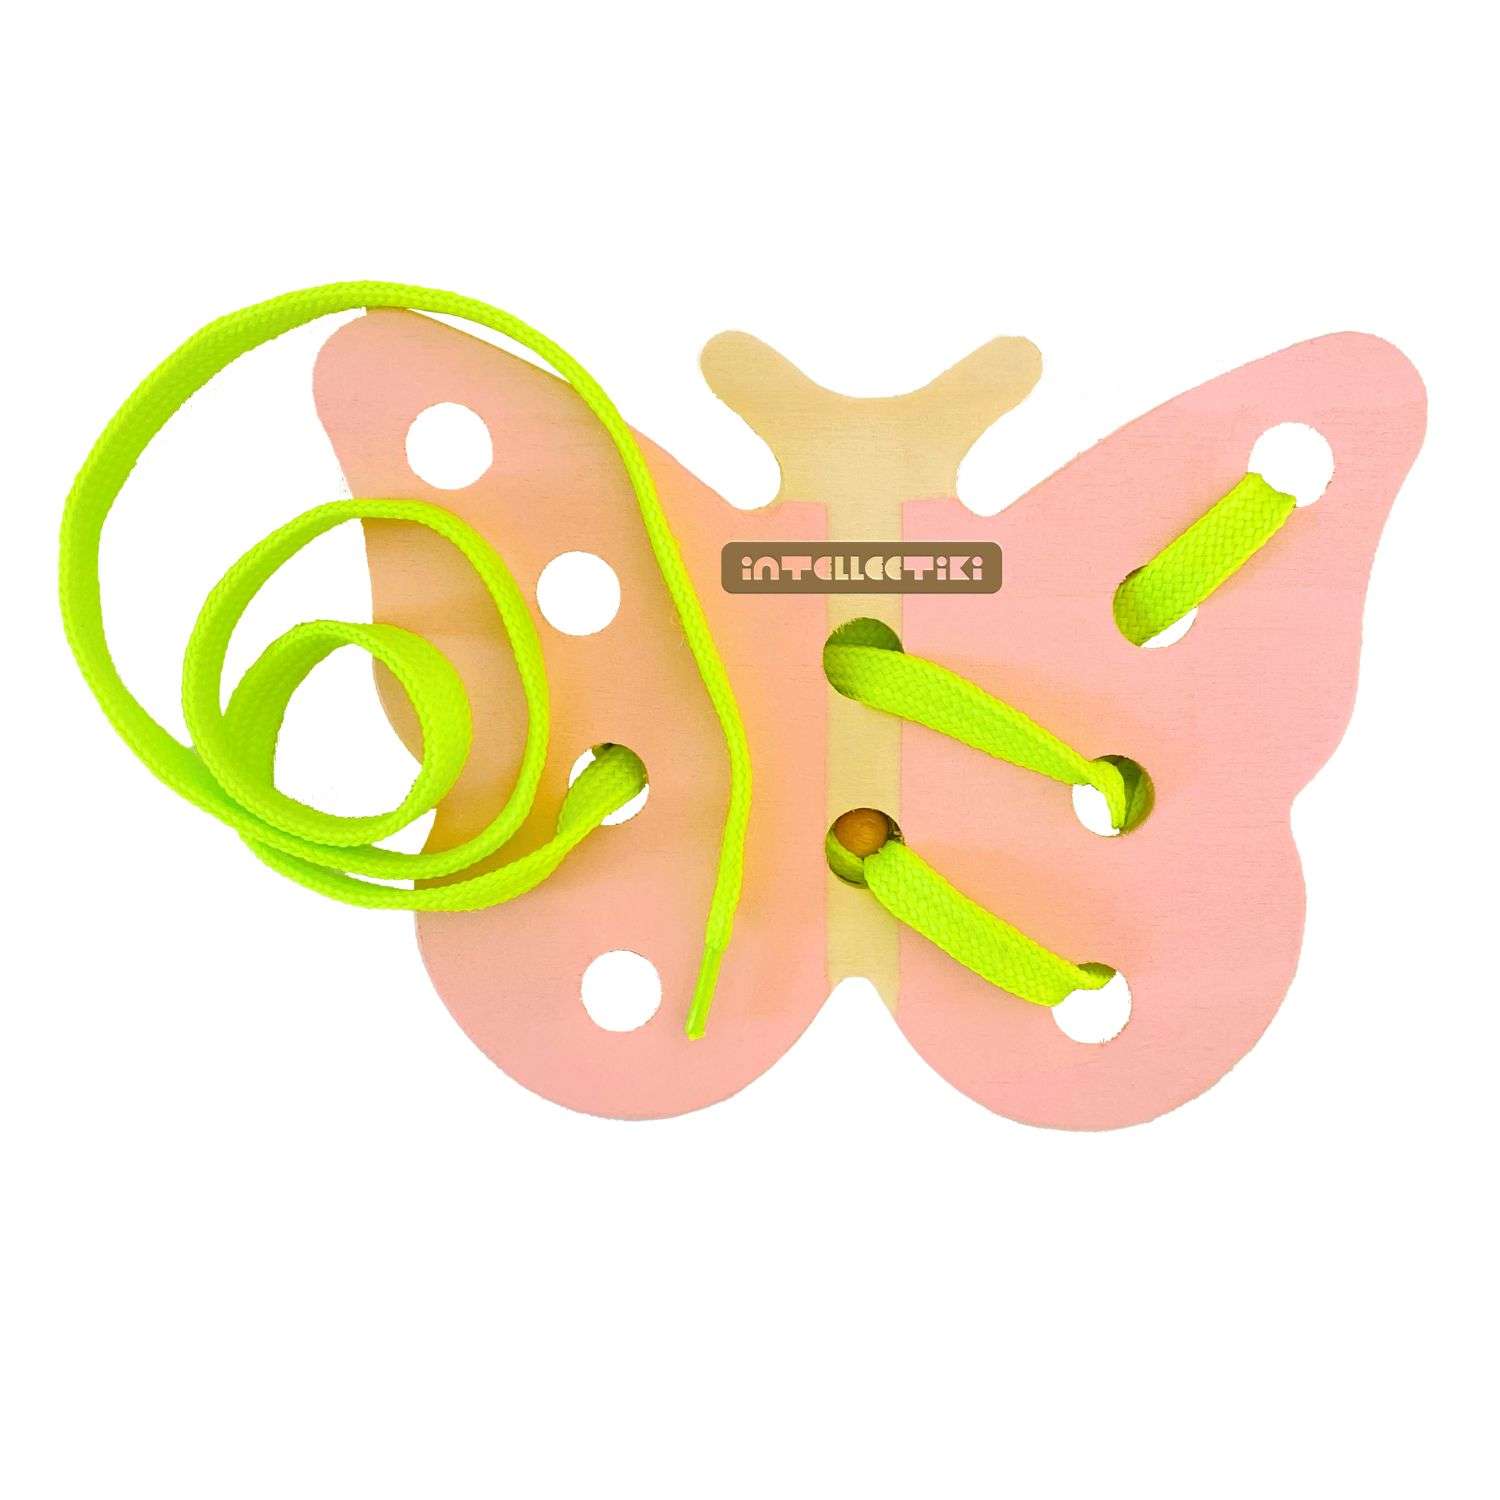 Шнуровка монтессори Intellectiki Бабочка - игрушка развивающая для детей из дерева - фото 1